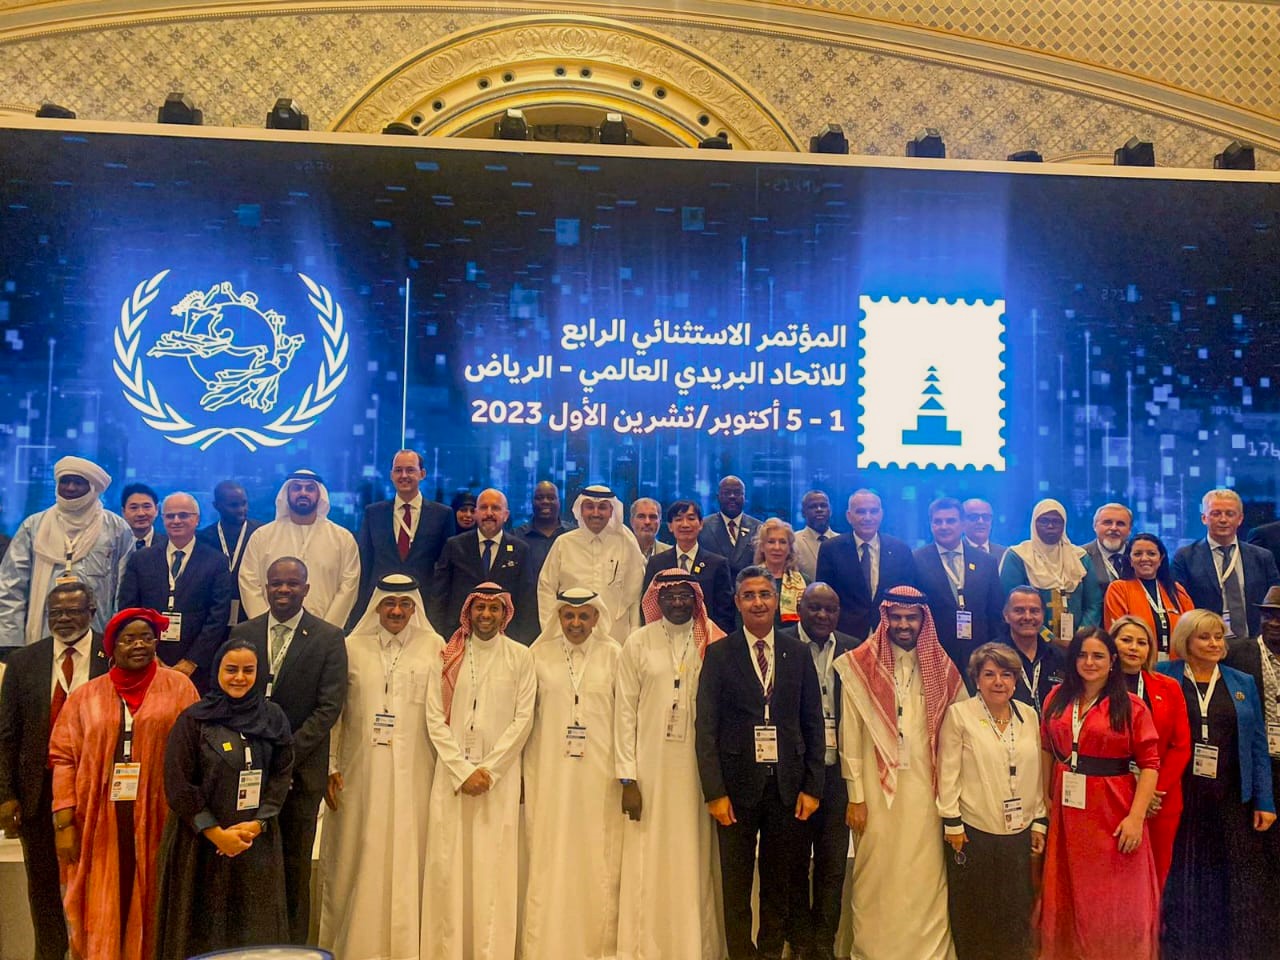 المؤتمر الاستثنائي الرابع للاتحاد البريدي العالمي - الرياض